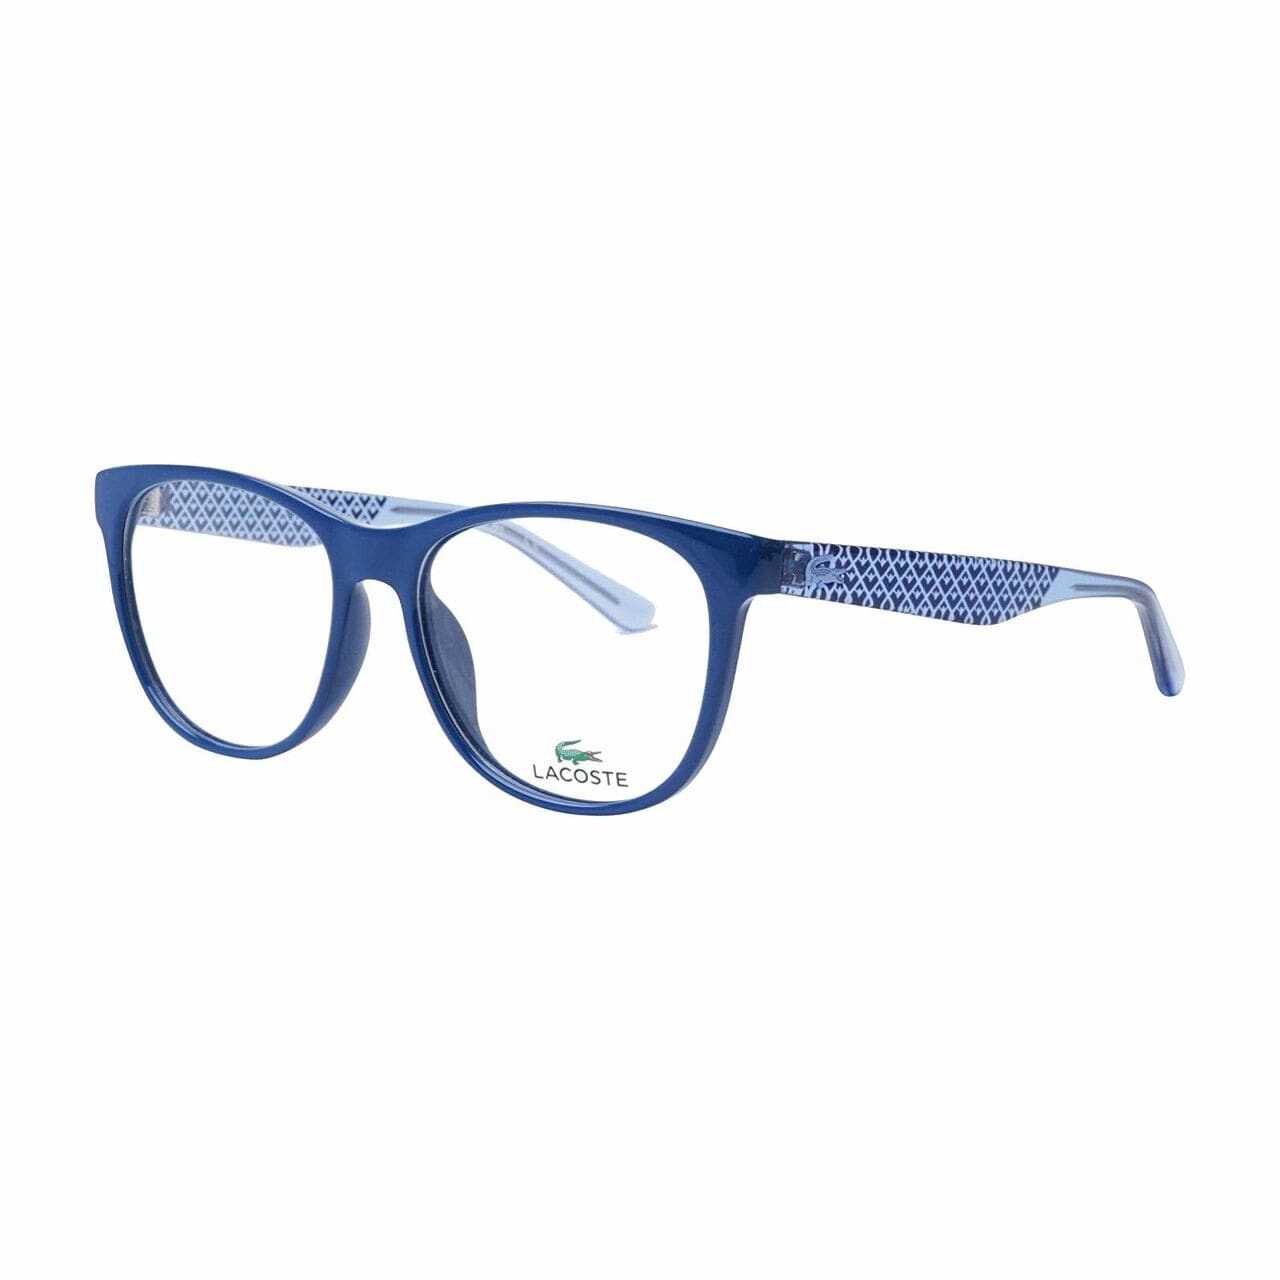 Lacoste L2773-424 Blue Round Women's Plastic Eyeglasses 886895276146